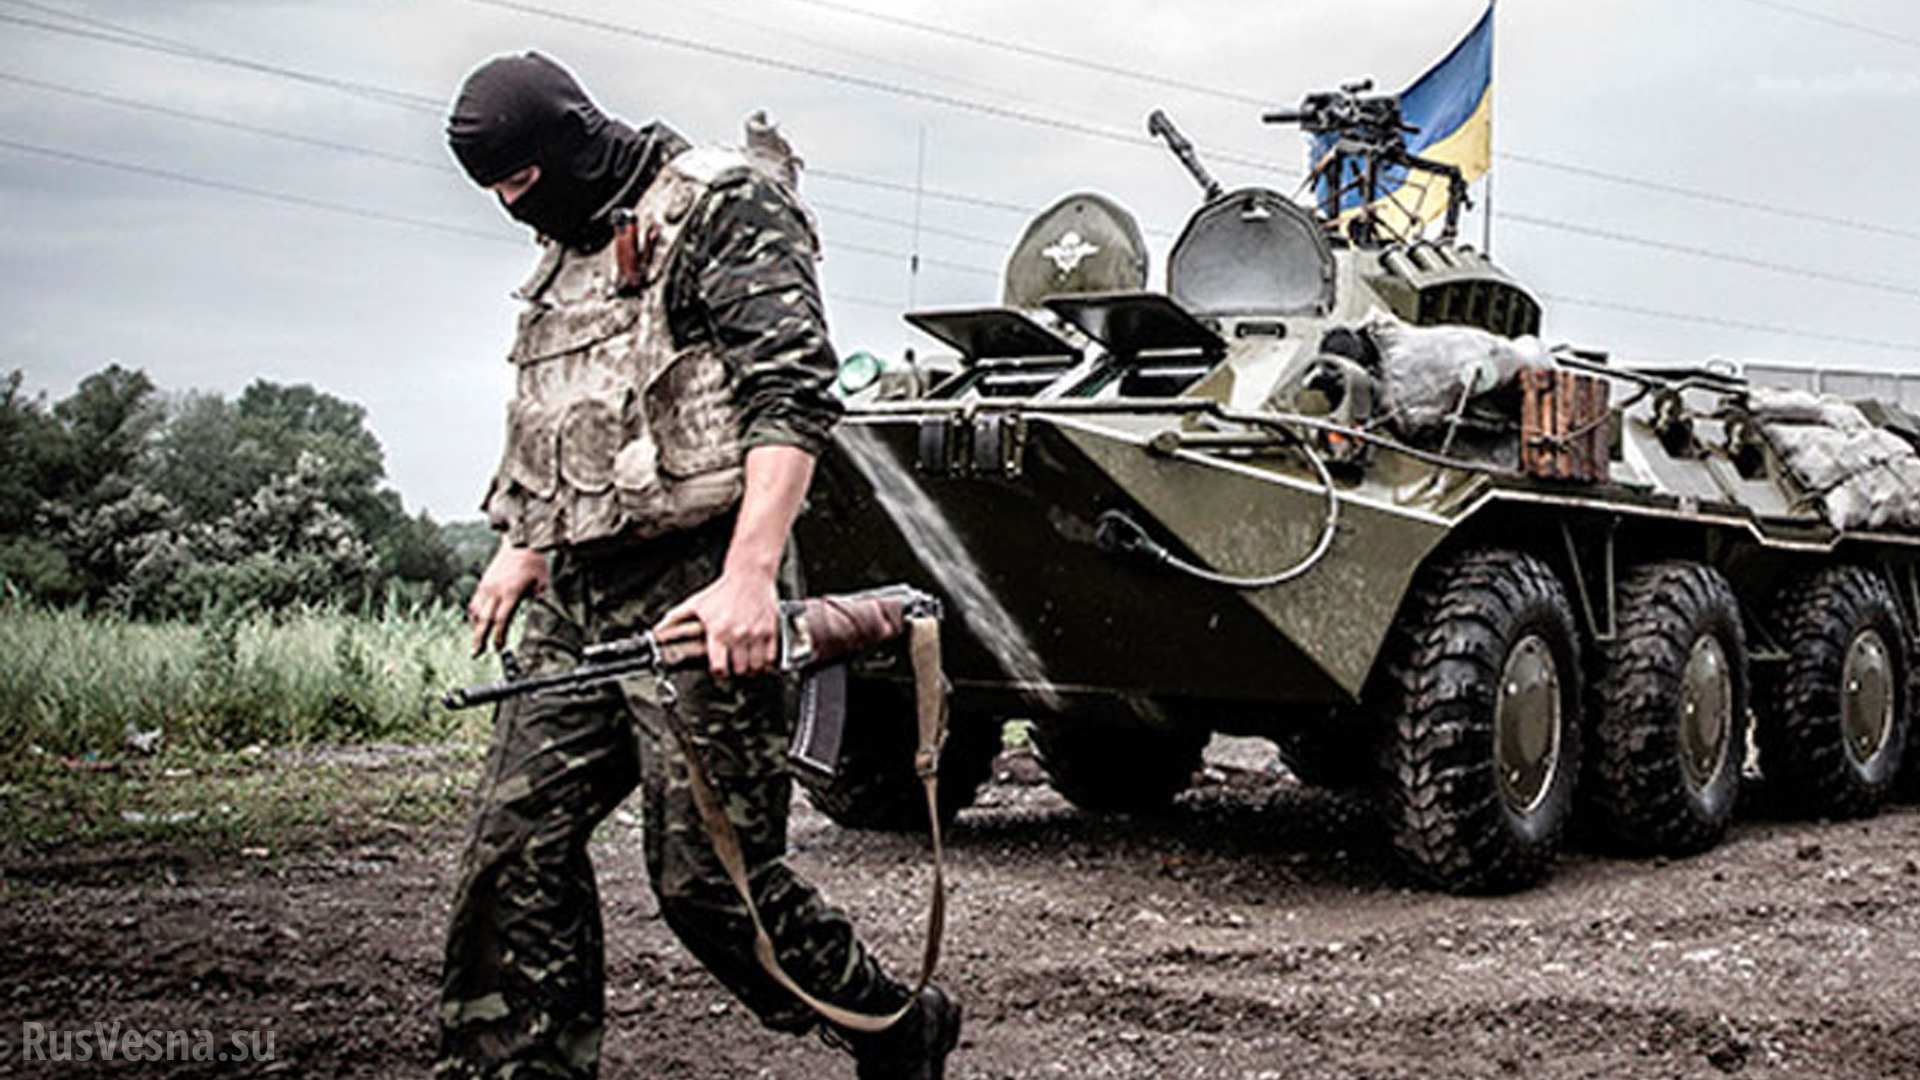 Судьба предателя: добровольца с Донбасса зверски убили в «учебке» ВСУ (ФОТО, ВИДЕО)